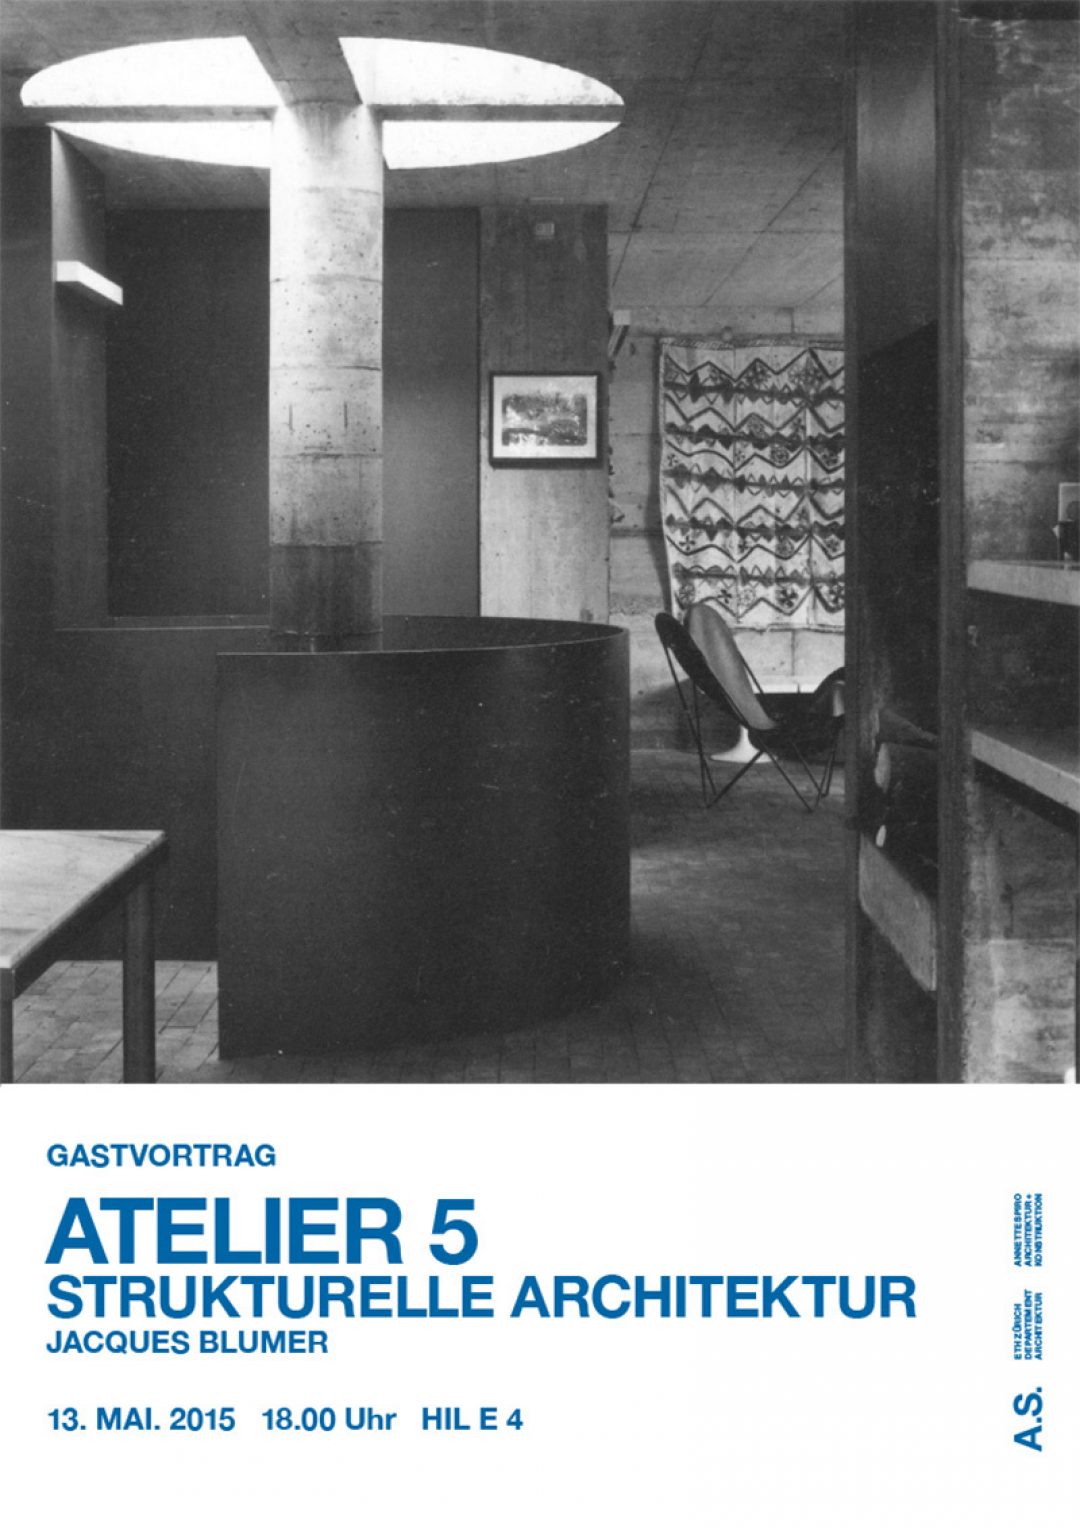 Jacques Blumer. ATELIER 5 - Strukturelle Architektur